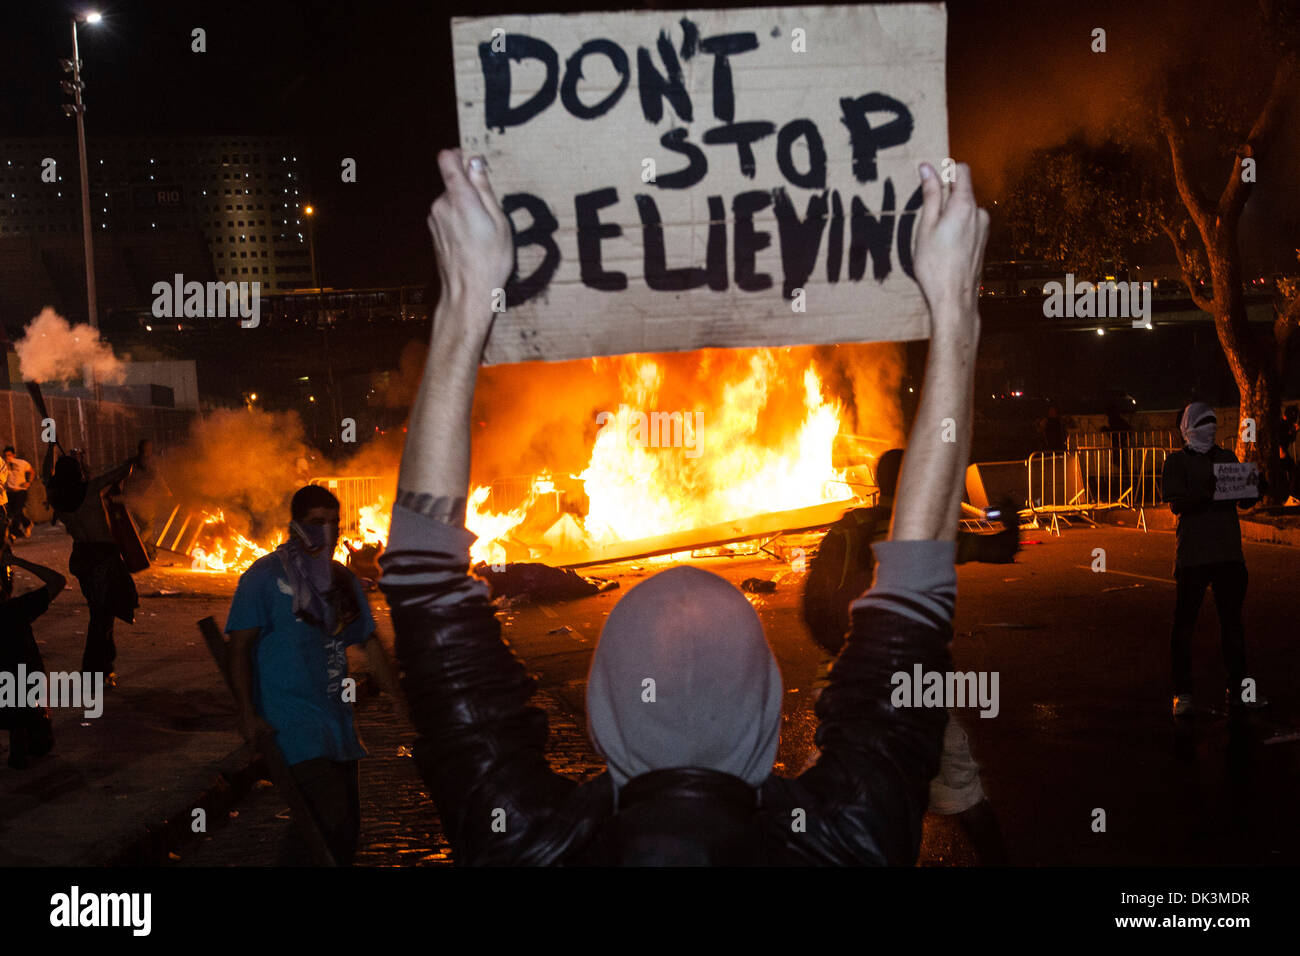 Brasilien-Protest. Revolte, Straße von Demonstranten verwüstet. Banner aufhören zu glauben, Feuer für die Sperrung der Polizei. Stockfoto